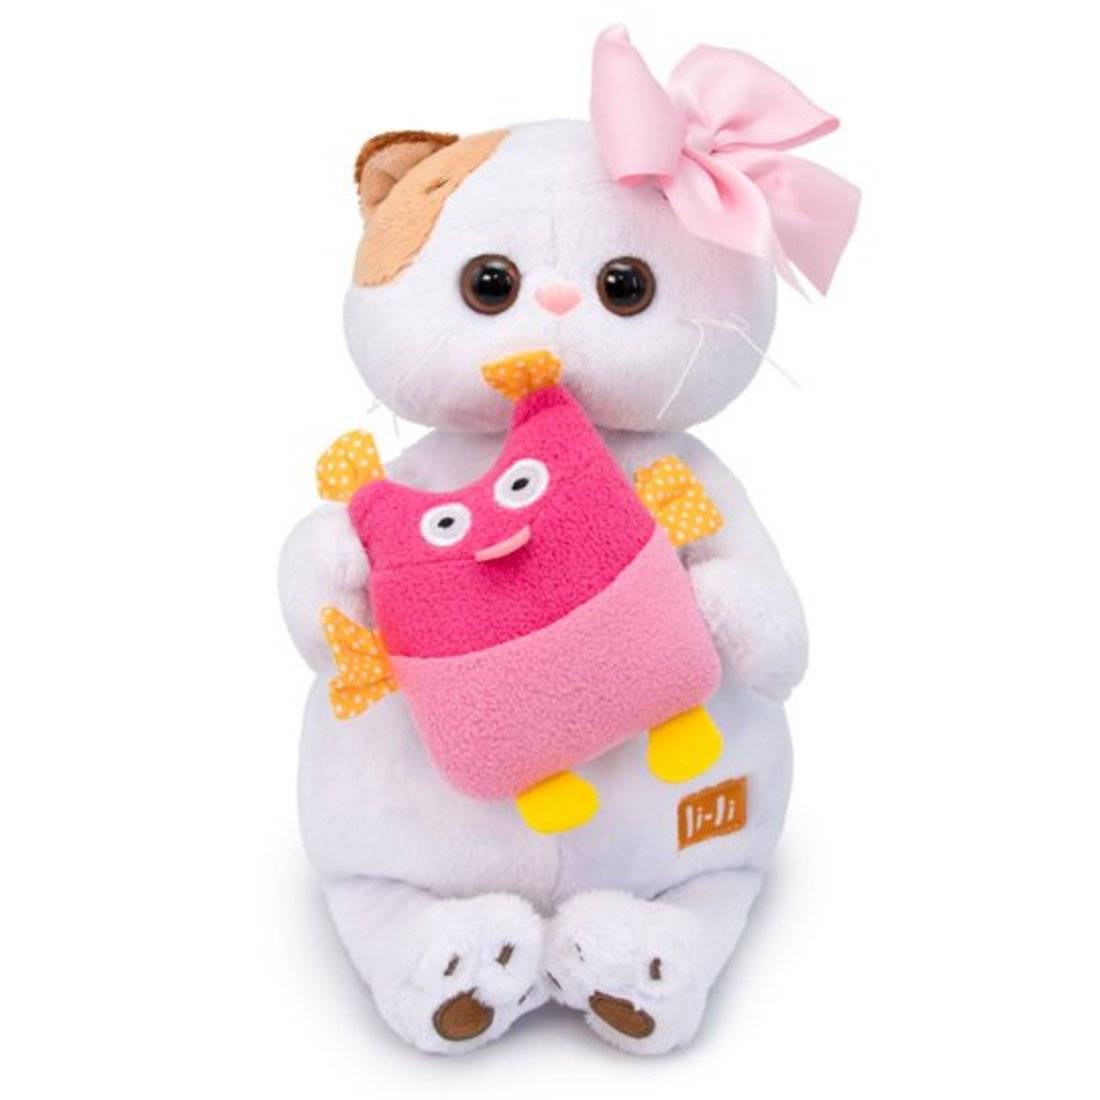 Мягкая игрушка Basik&co кошка ли-ли в платье с совой 27 см. Мягкая игрушка Budi basa кошка ли-ли с розовым бантом 24 см. Игрушка ли ли кошка